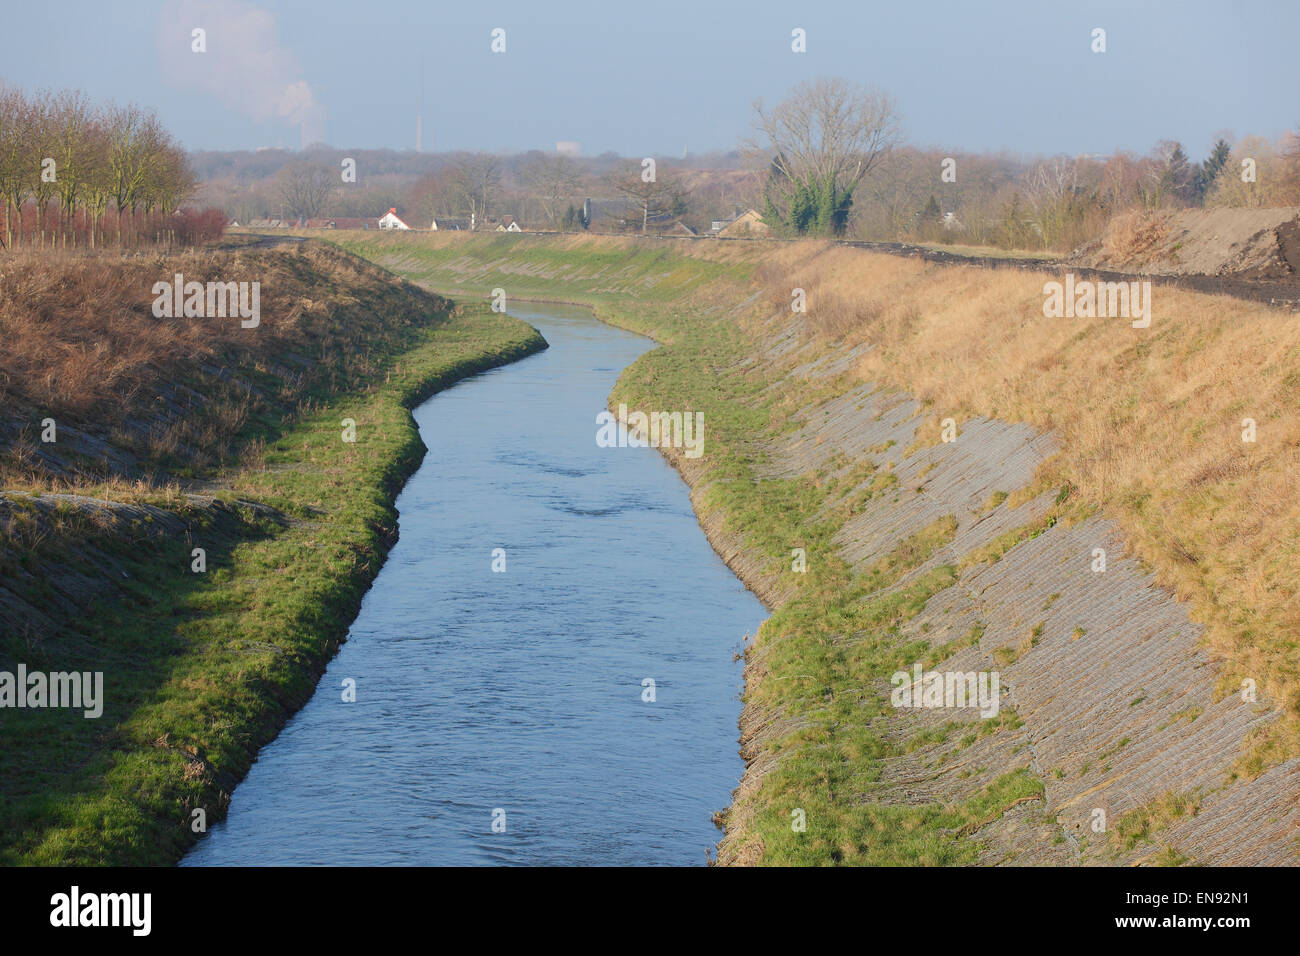 River Seseke, renaturated, Lunen, North Rhine-Westphalia, Germany|Seseke, renaturiert, Luenen, Nordrhein-Westfalen, Deutschland Stock Photo